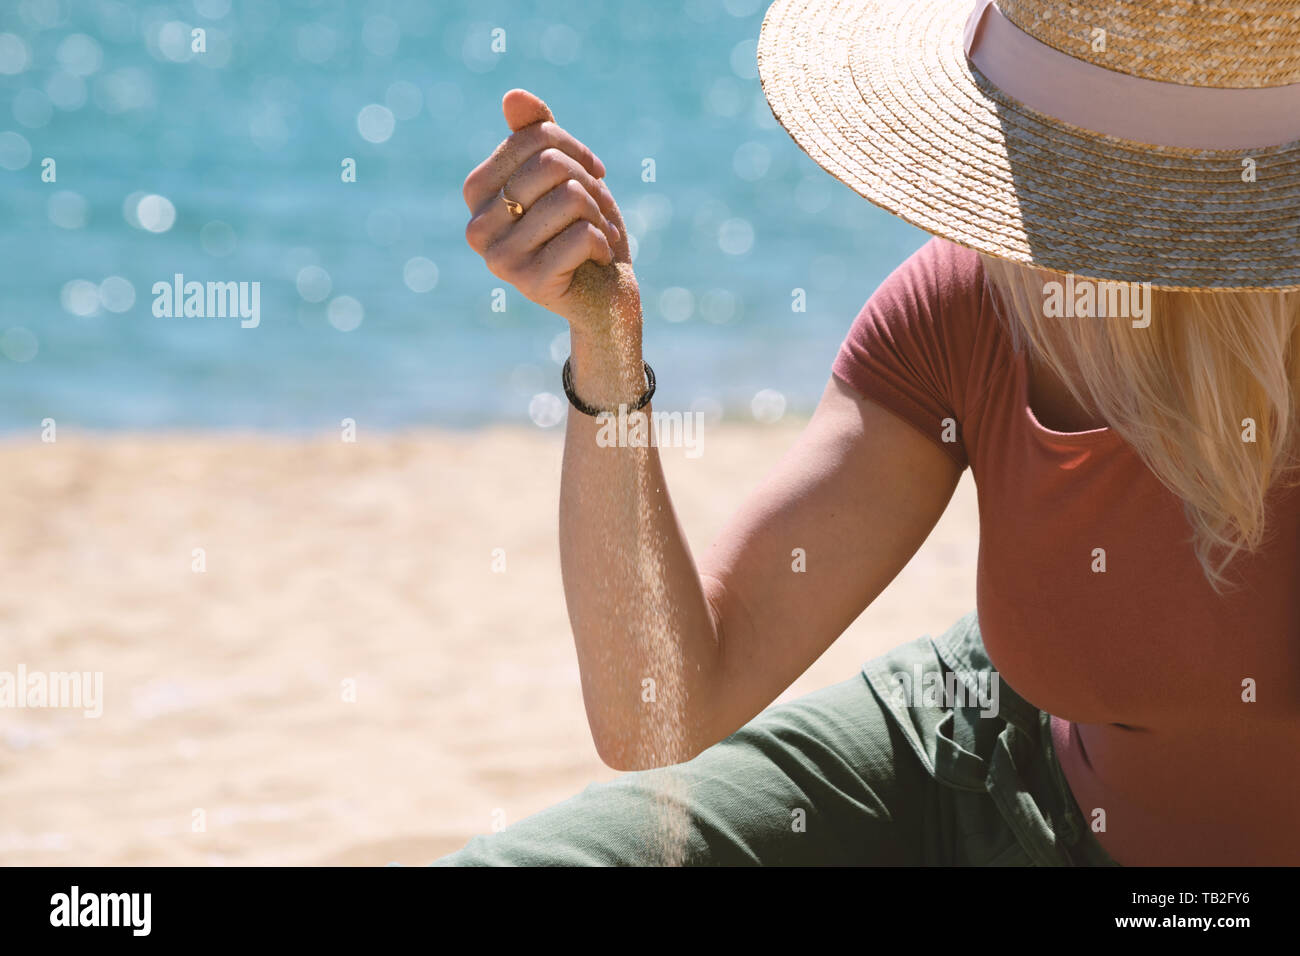 Frau mit casual Outfit und Strohhut sitzend auf Sandstrand vor blauem Meer und Sand durch ihre Hände fließt. Sommer Urlaub Konzept Stockfoto